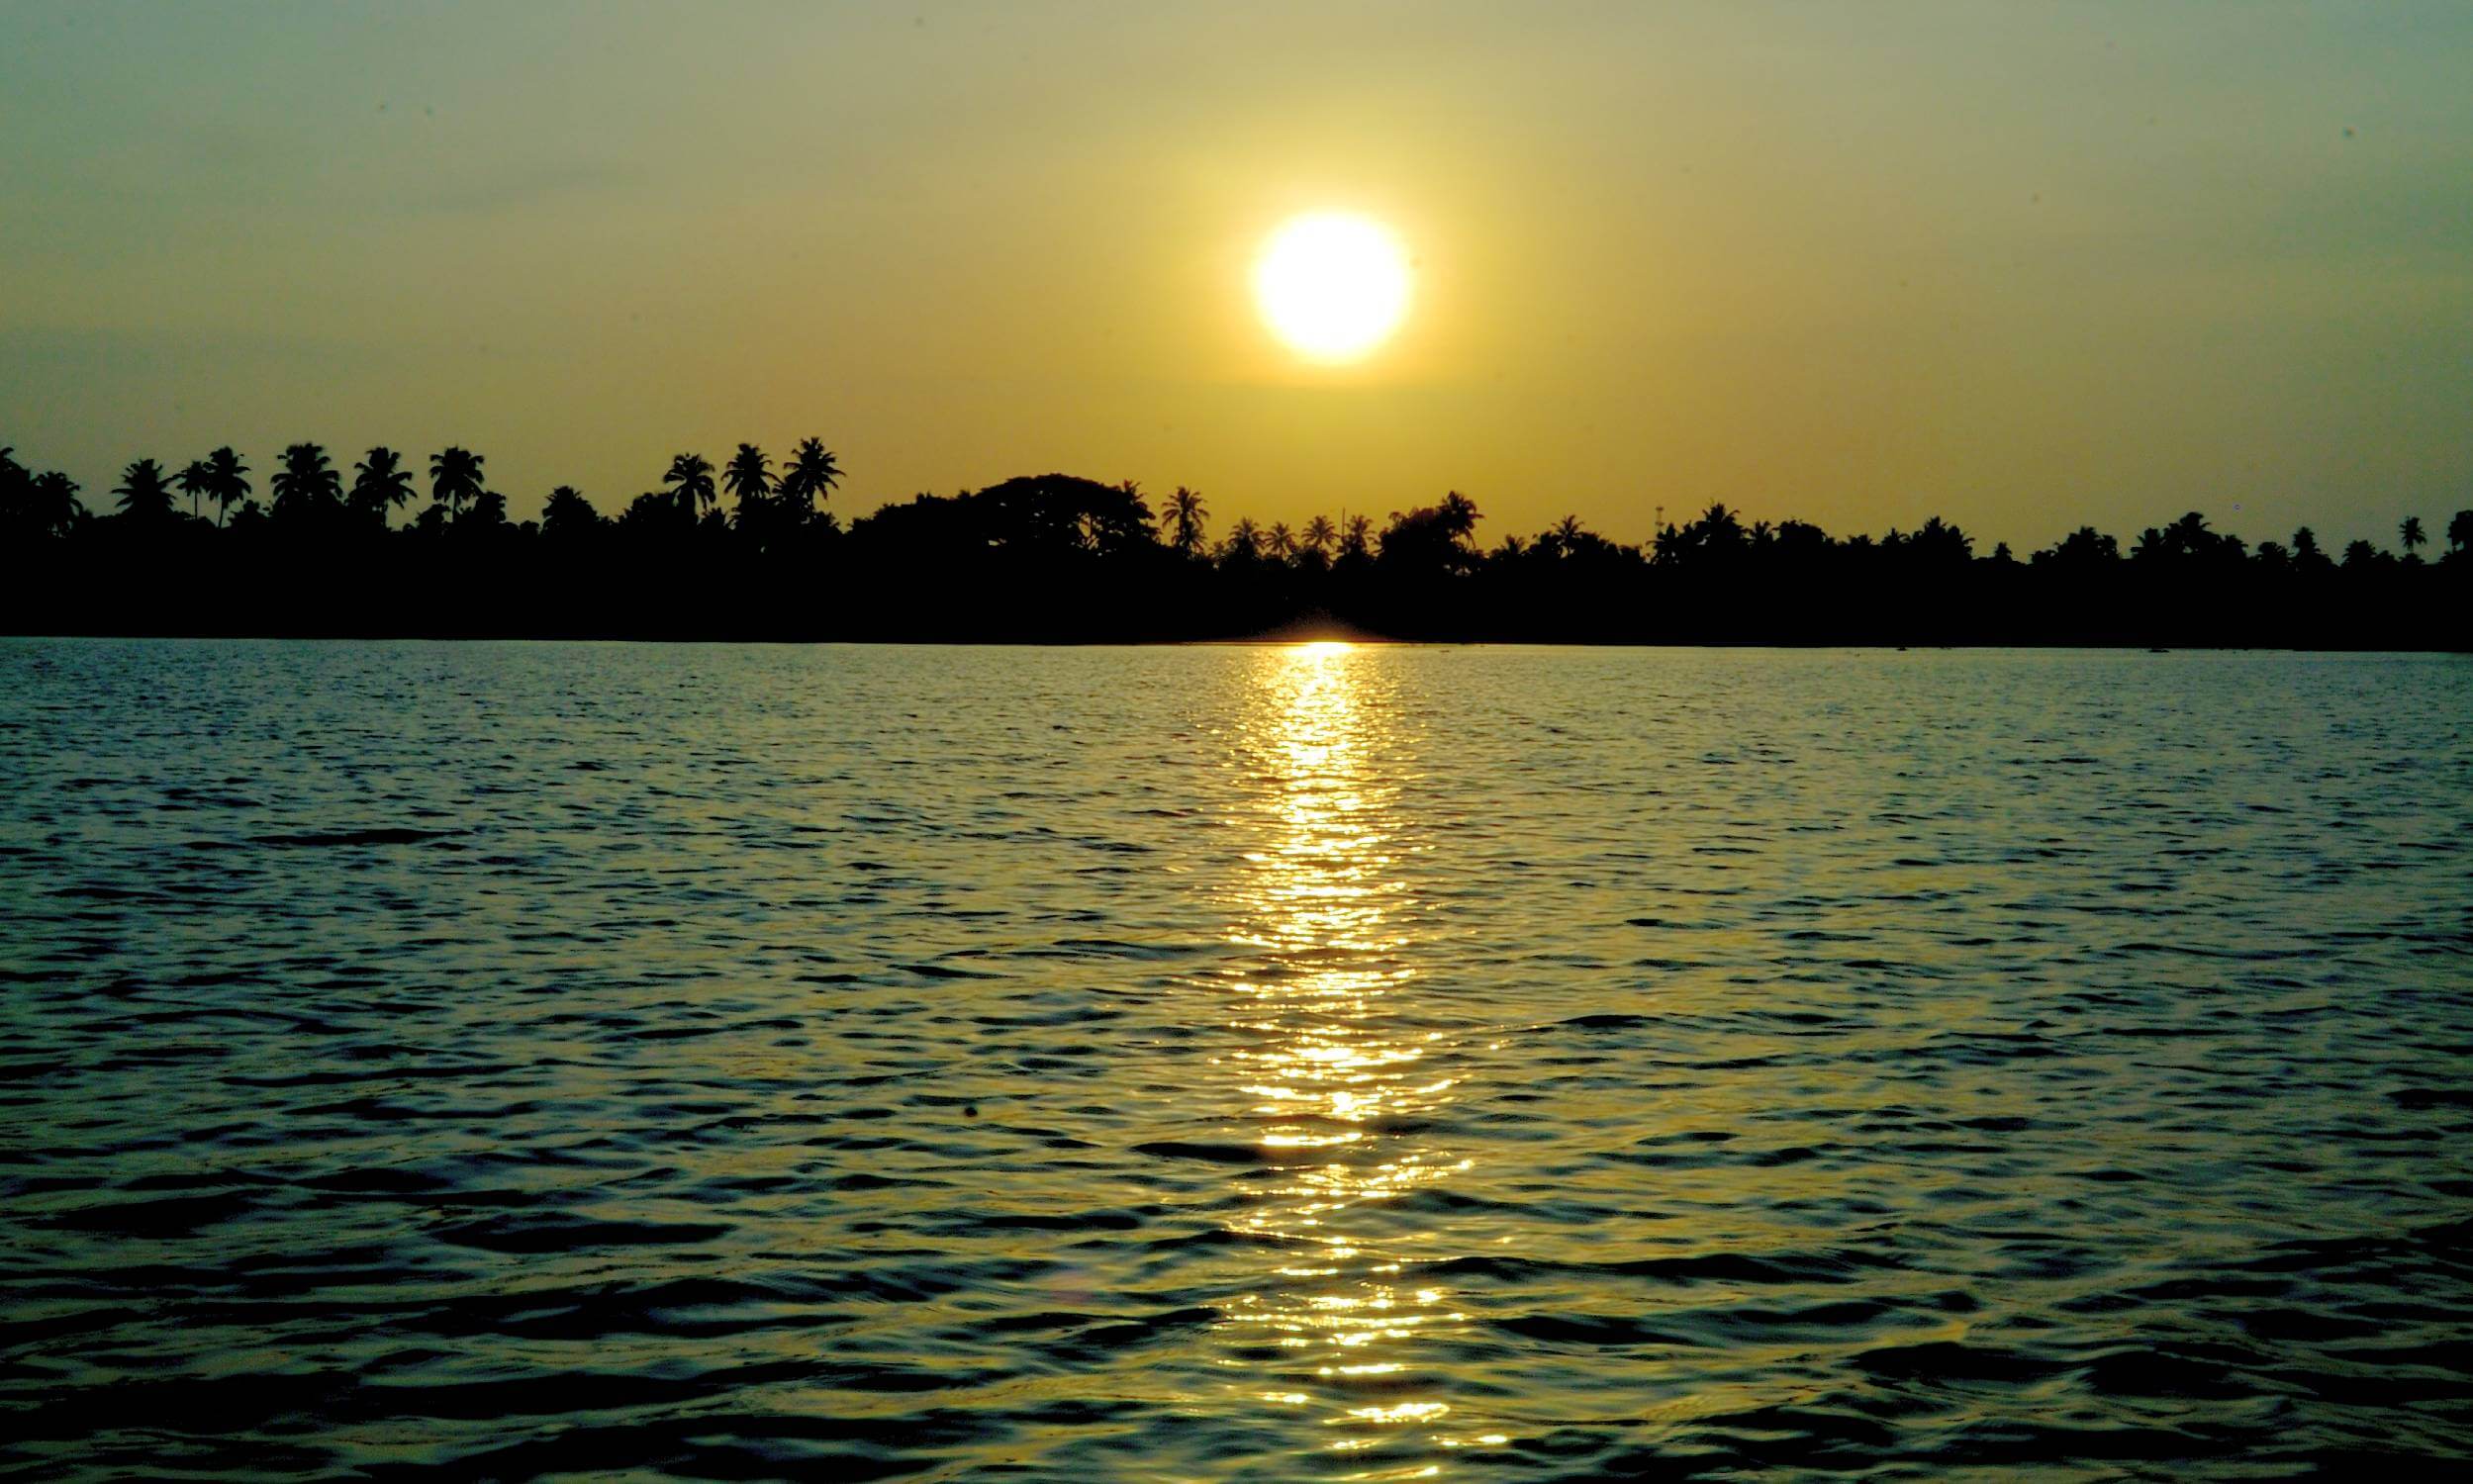 Kumarakom Kerala